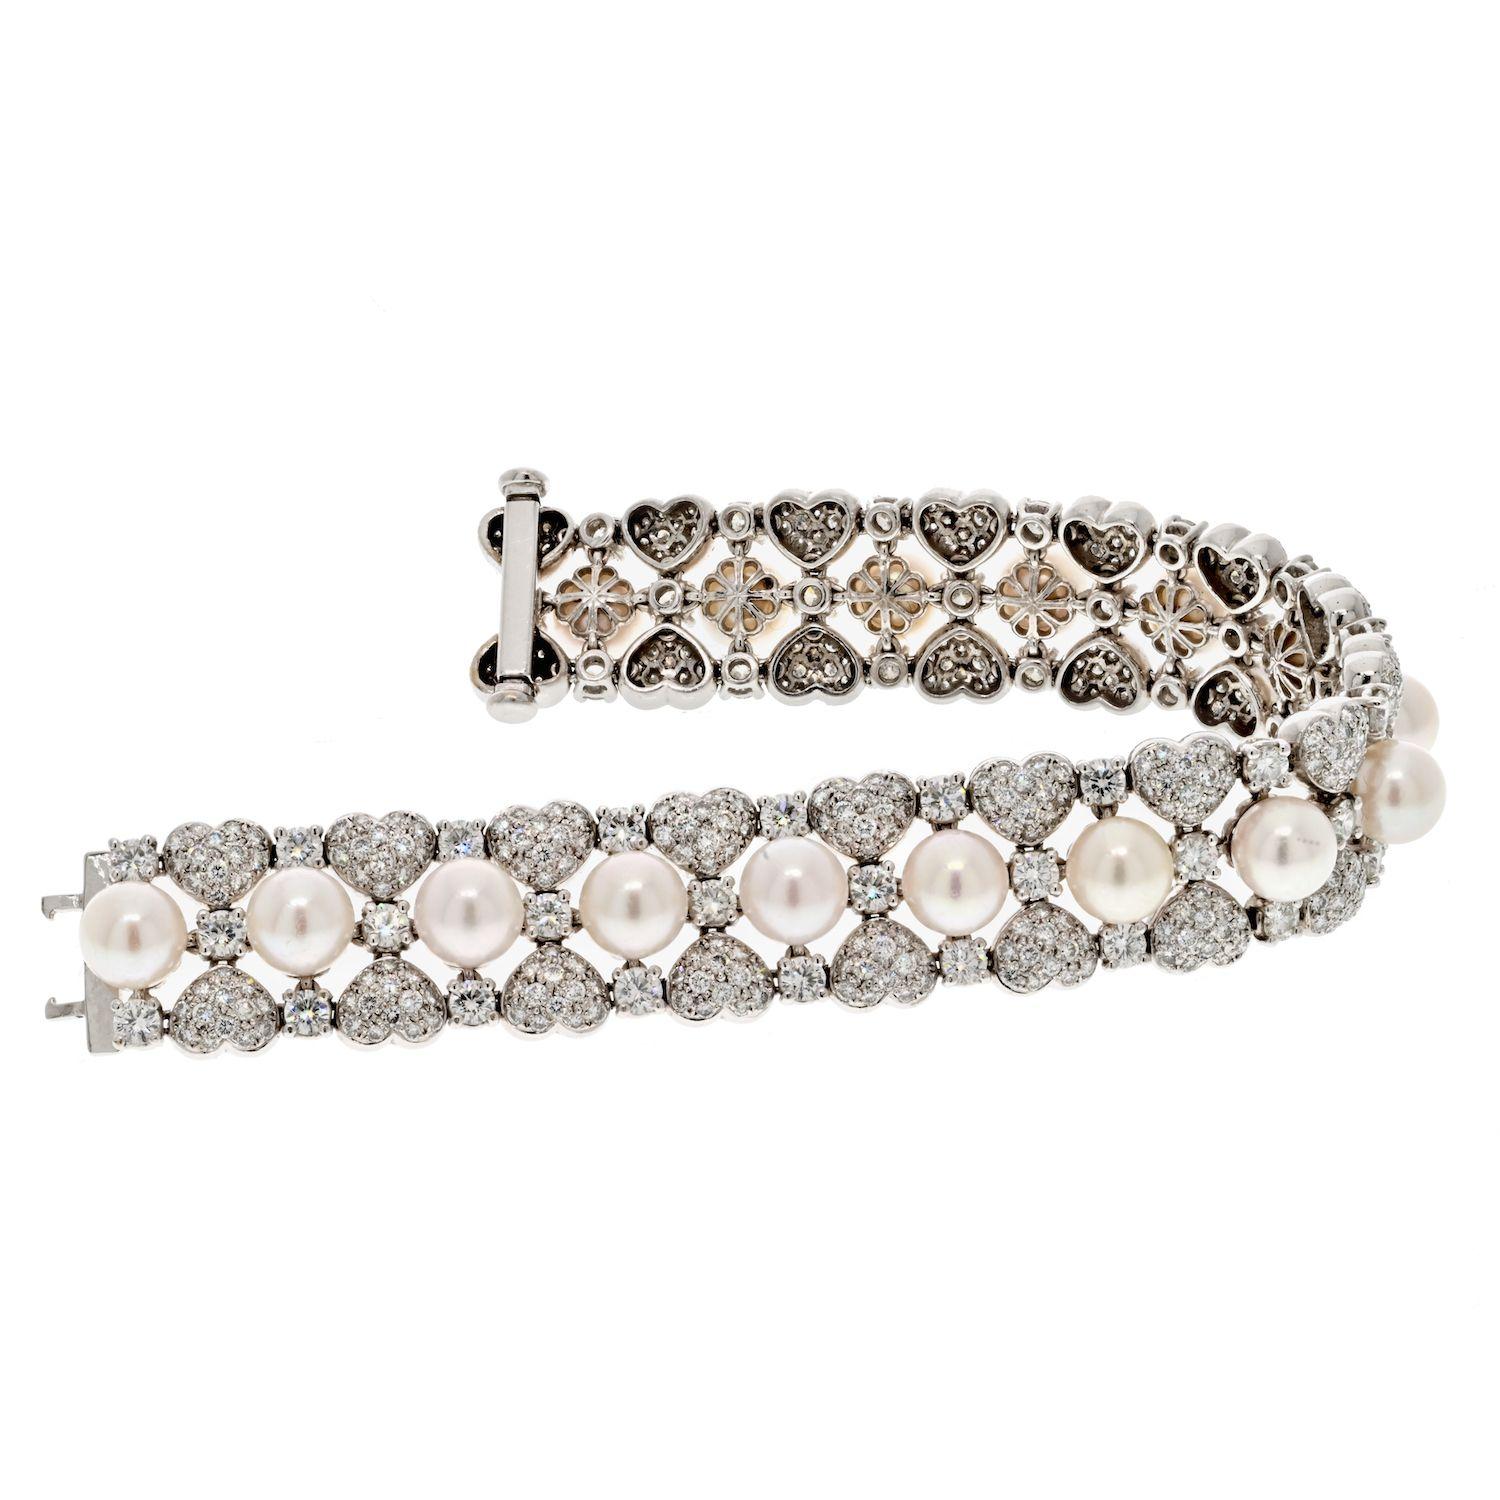 Das einreihige Armband aus 18 Karat Weißgold mit 15,00 ct runden Diamanten und Perlen ist ein atemberaubendes Schmuckstück, das die Eleganz von Diamanten und die zeitlose Schönheit von Perlen nahtlos vereint. Dieses Armband aus glänzendem